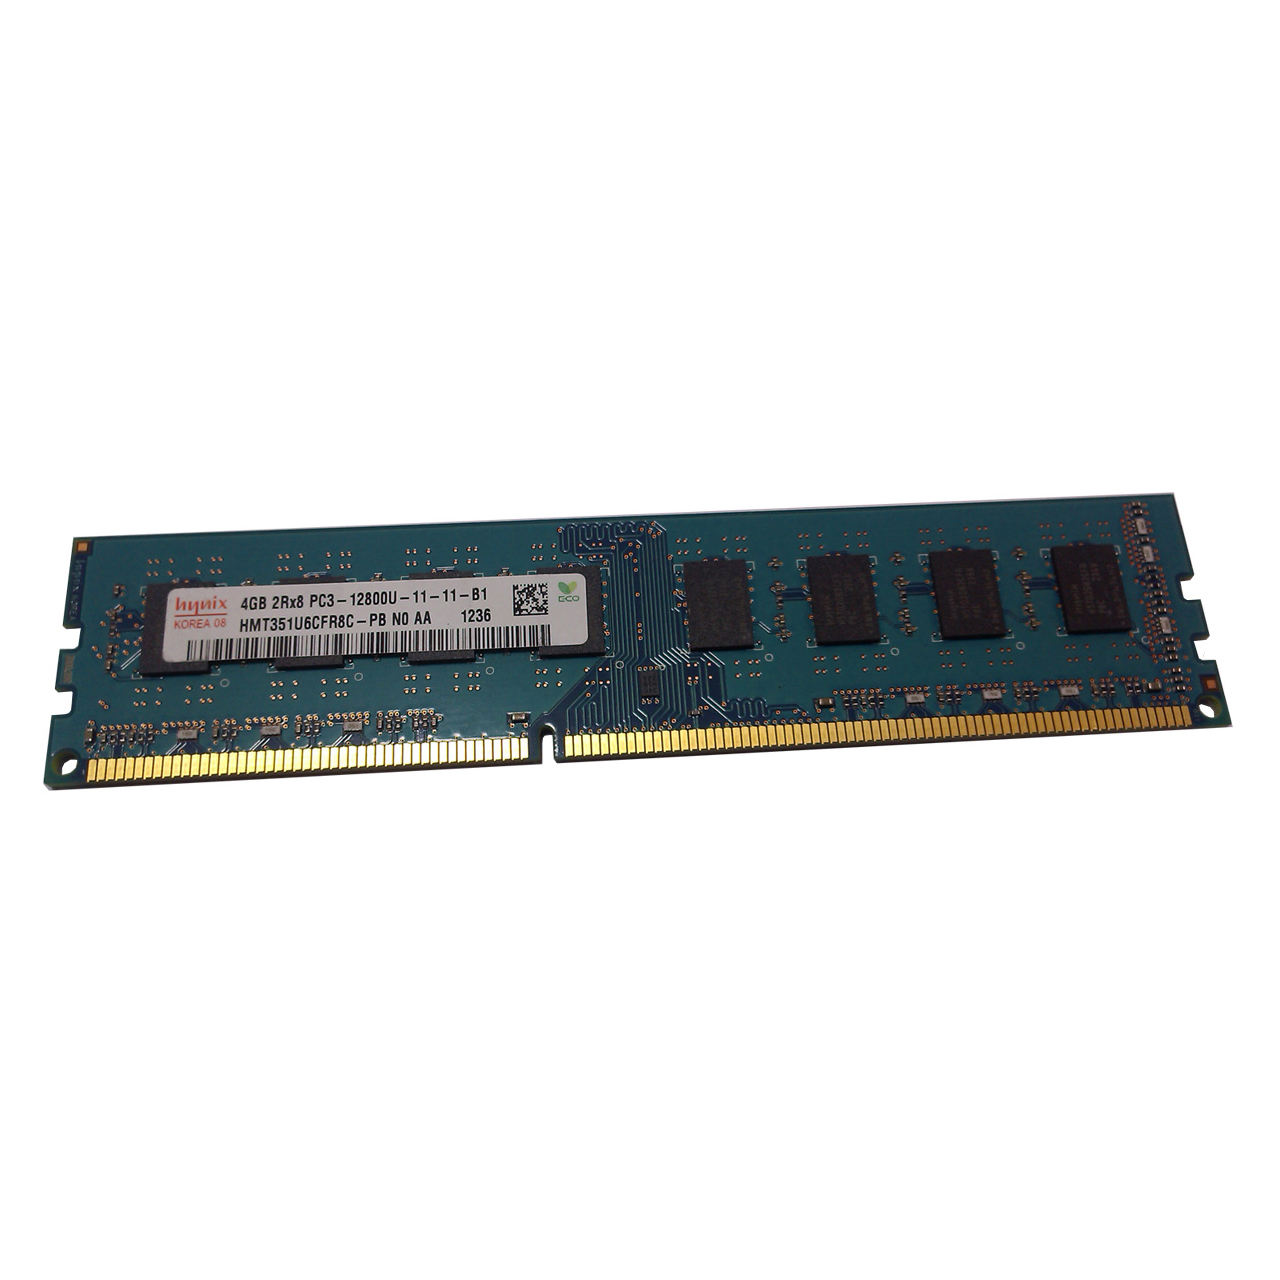  رم دسکتاپ DDR3 تک کاناله 1600 مگاهرتز هاینیکس مدل 12800 ظرفیت 4 گیگابایت